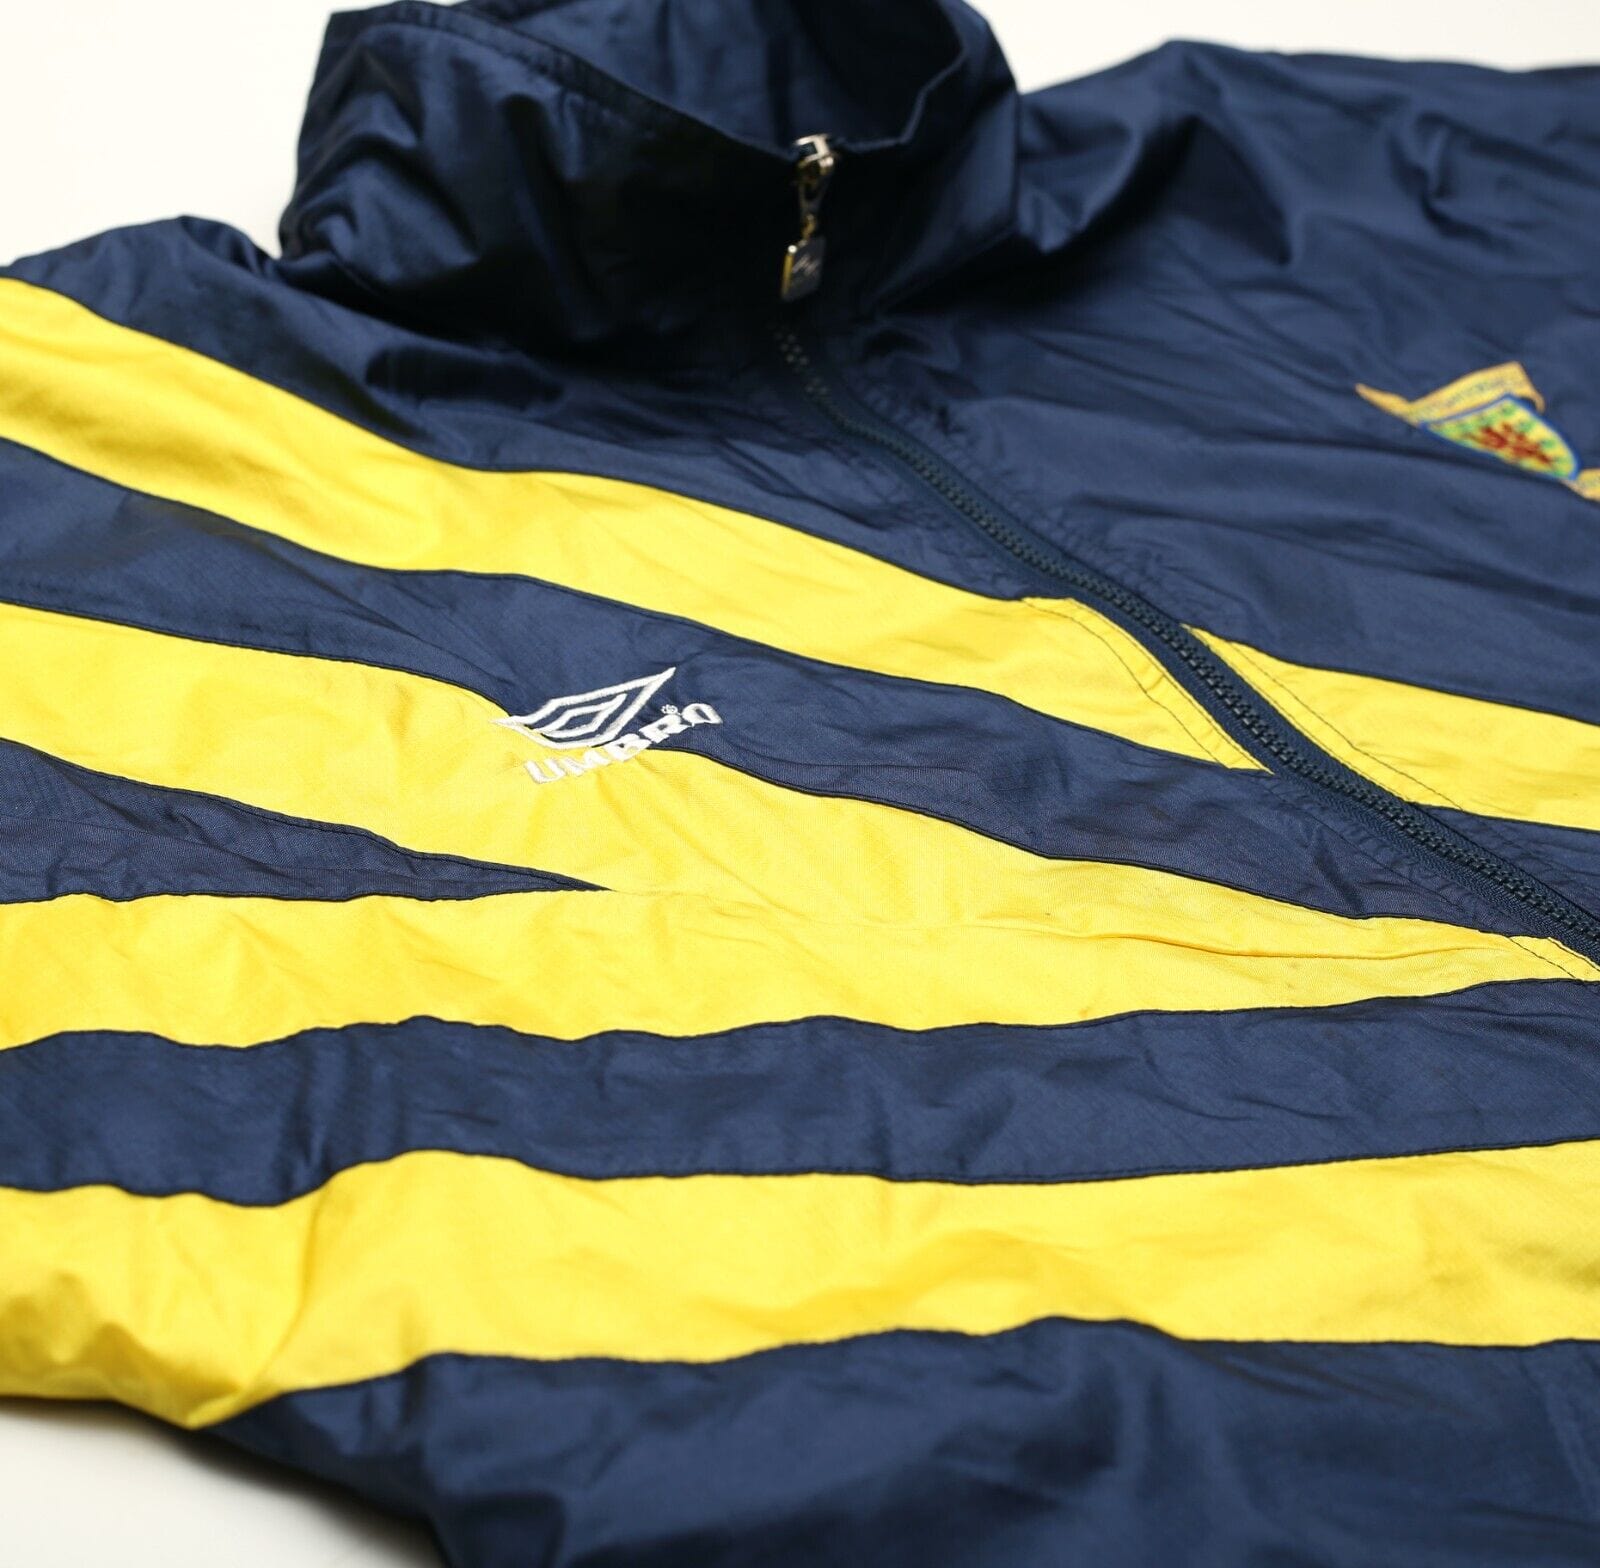 1992 SCOTLAND Vintage Umbro Football Rain Jacket (S/M)